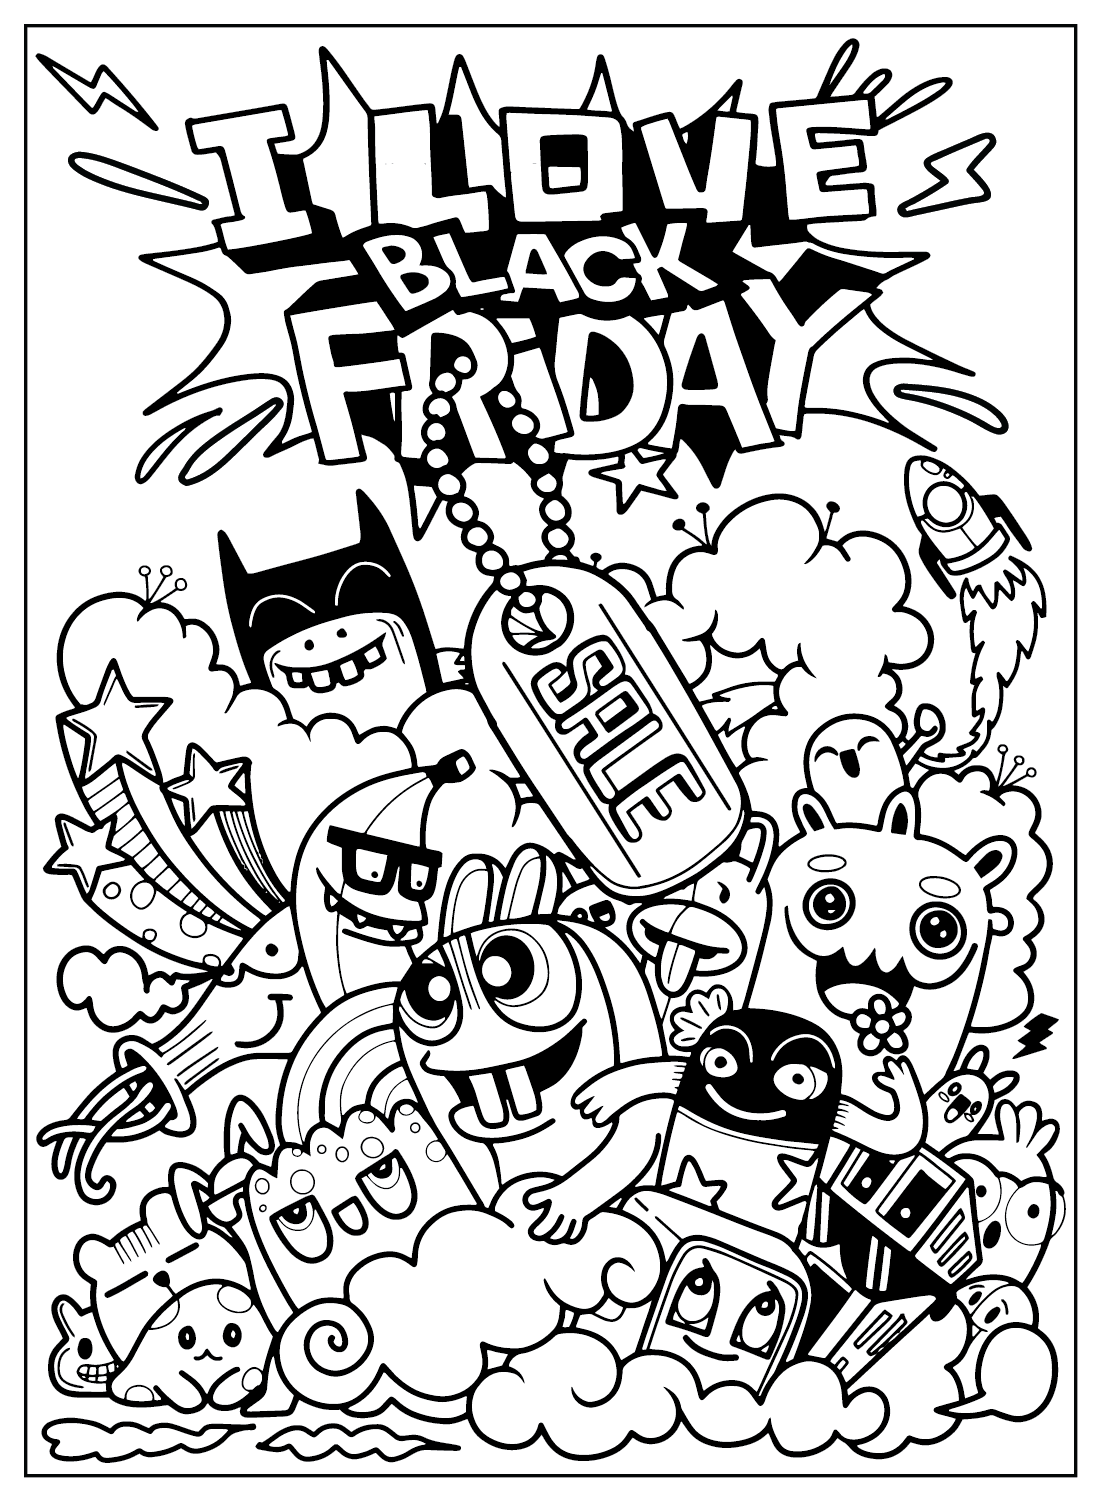 Página en color del Black Friday del Black Friday